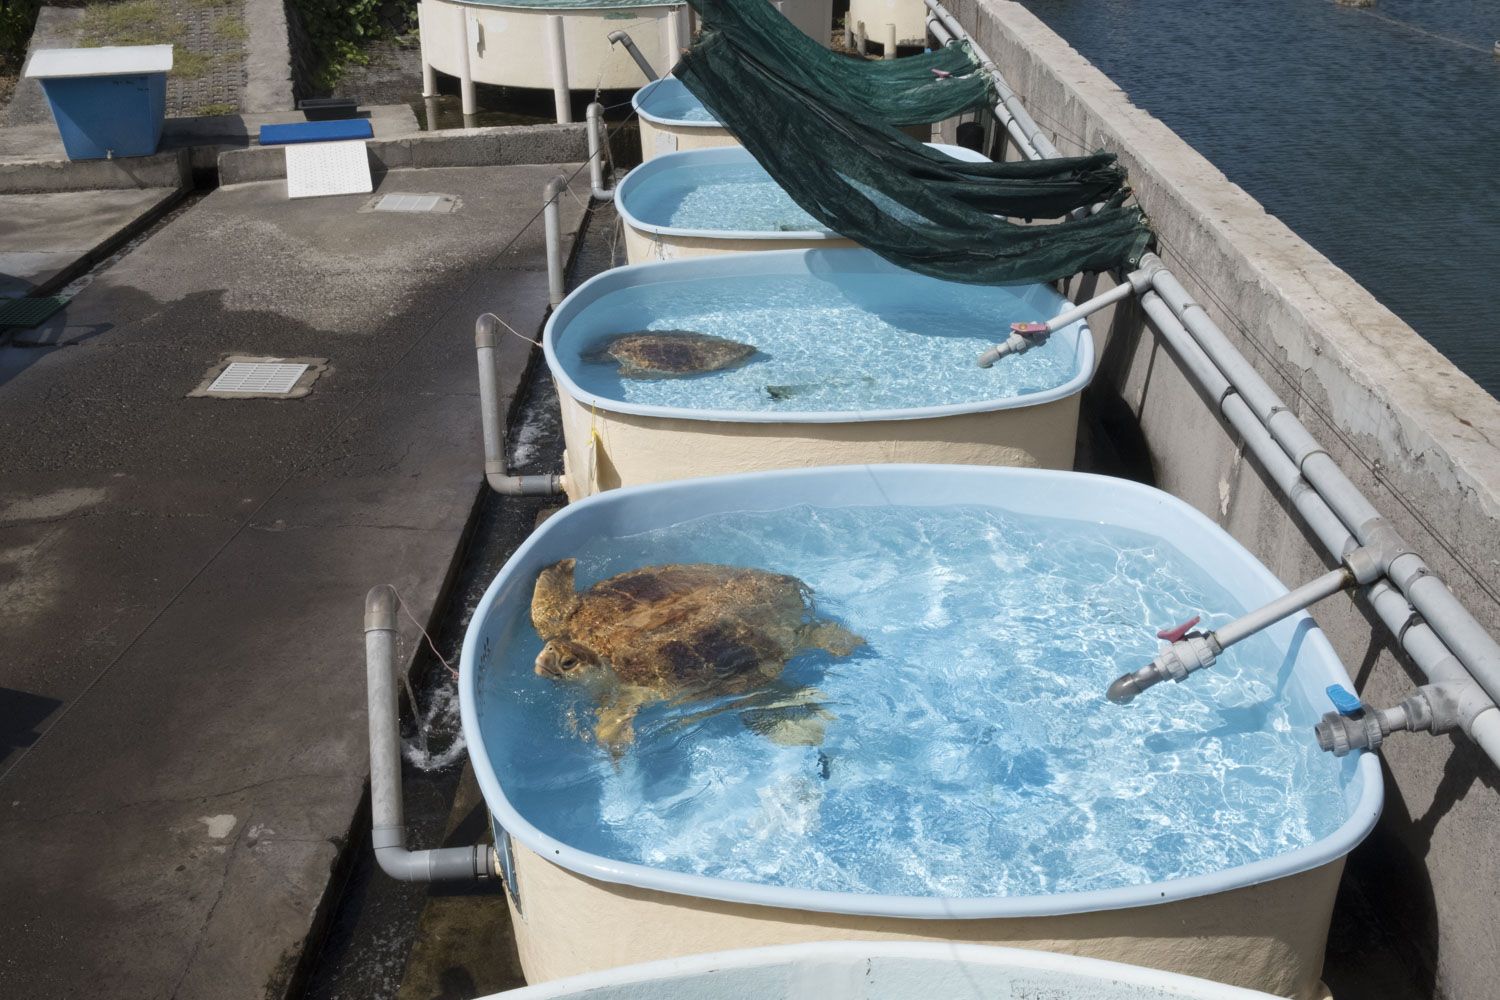 Ici, la partie réservée aux scientifiques. Les tortues sont installées dans des bassins individuels pour être soignées.